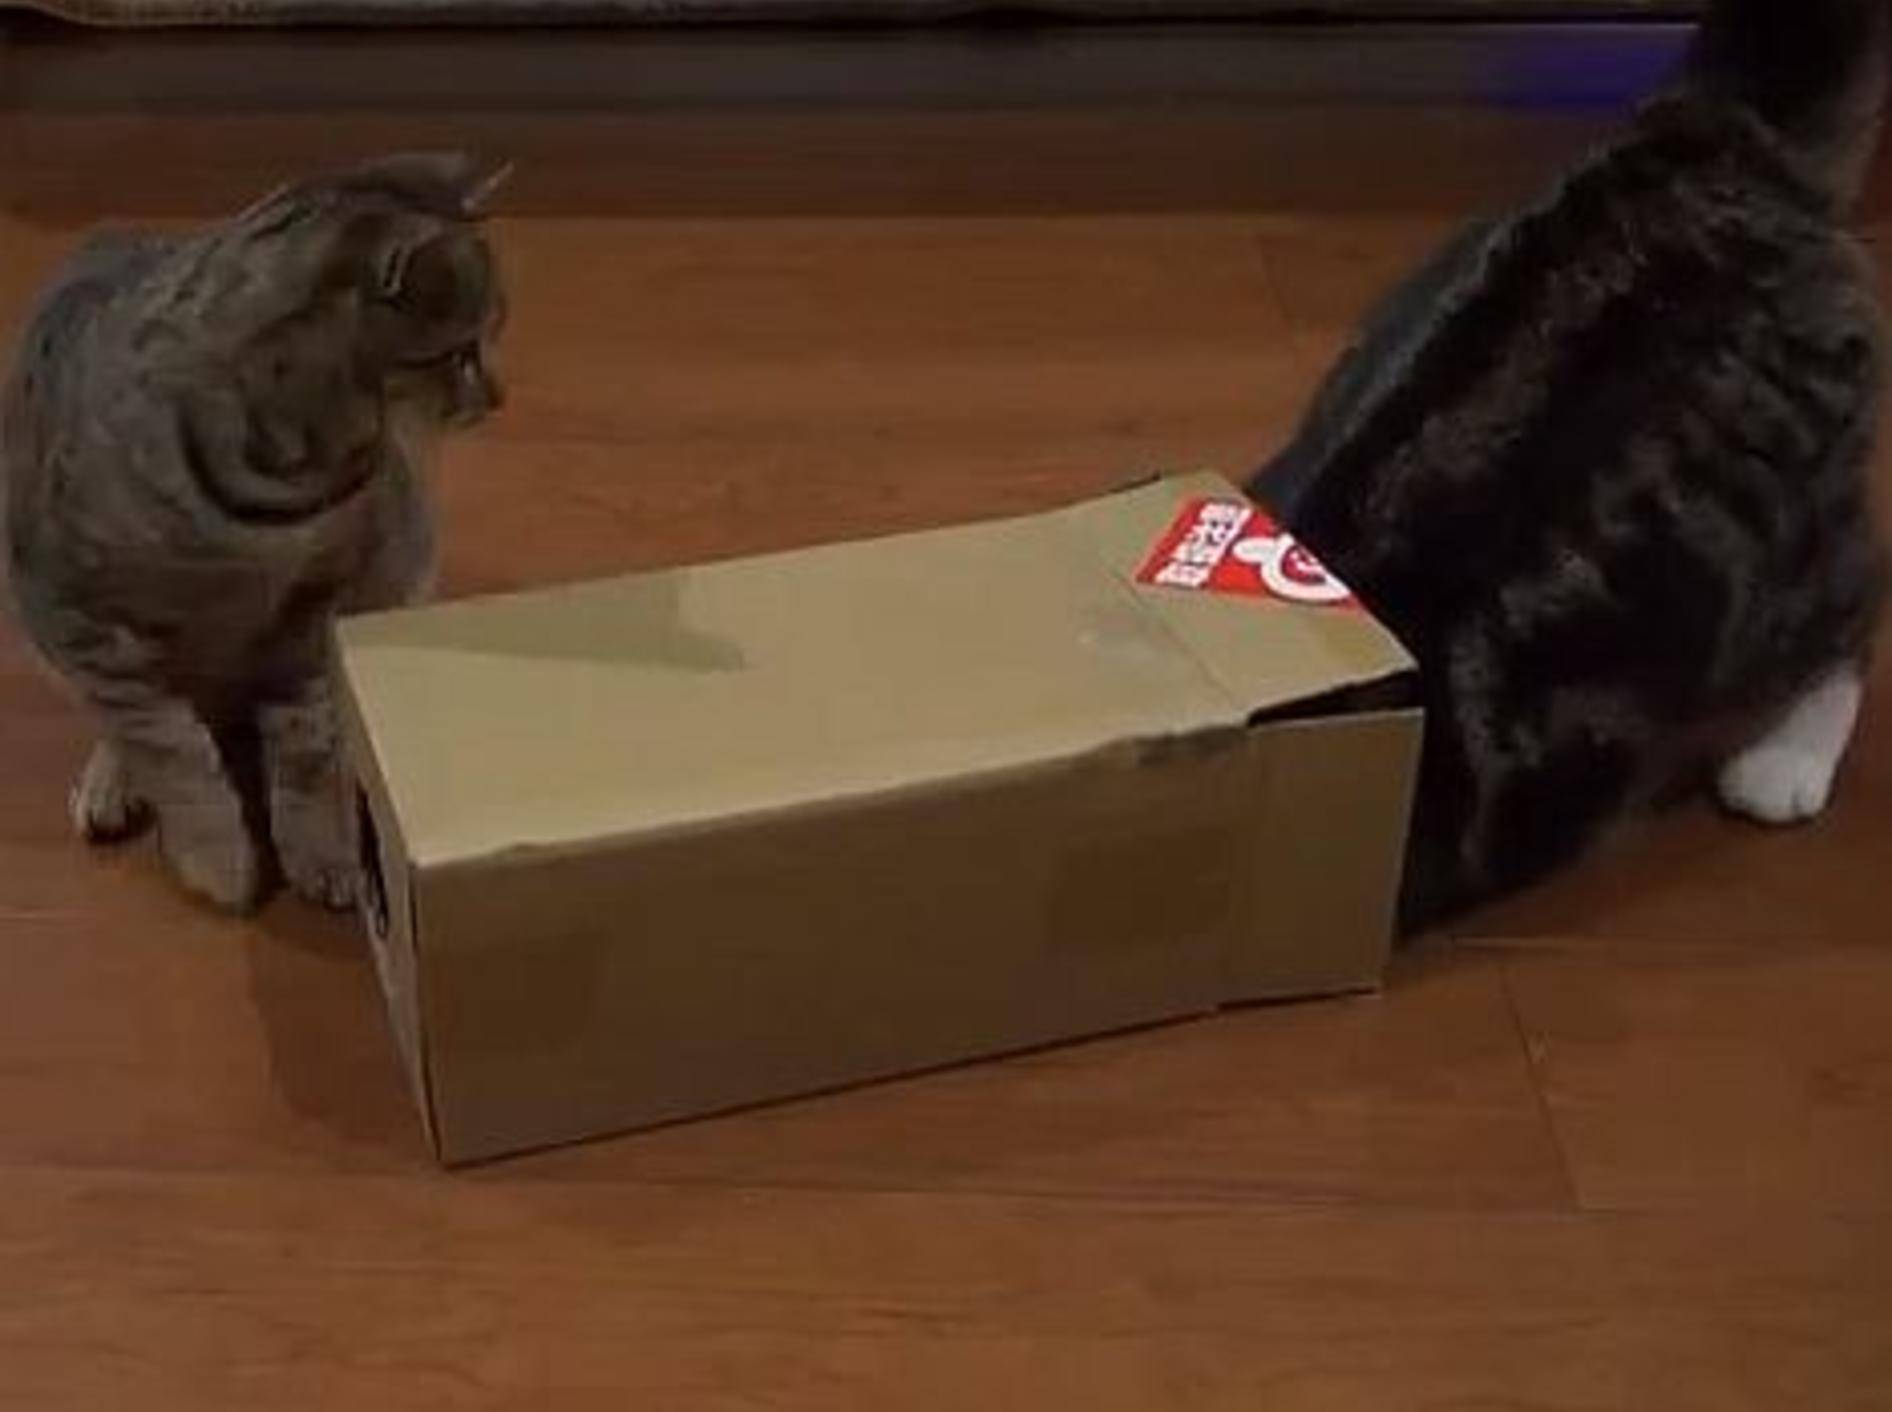 Maru präsentiert: Große Katze, kleiner Karton – Bild: Youtube / mugumogu